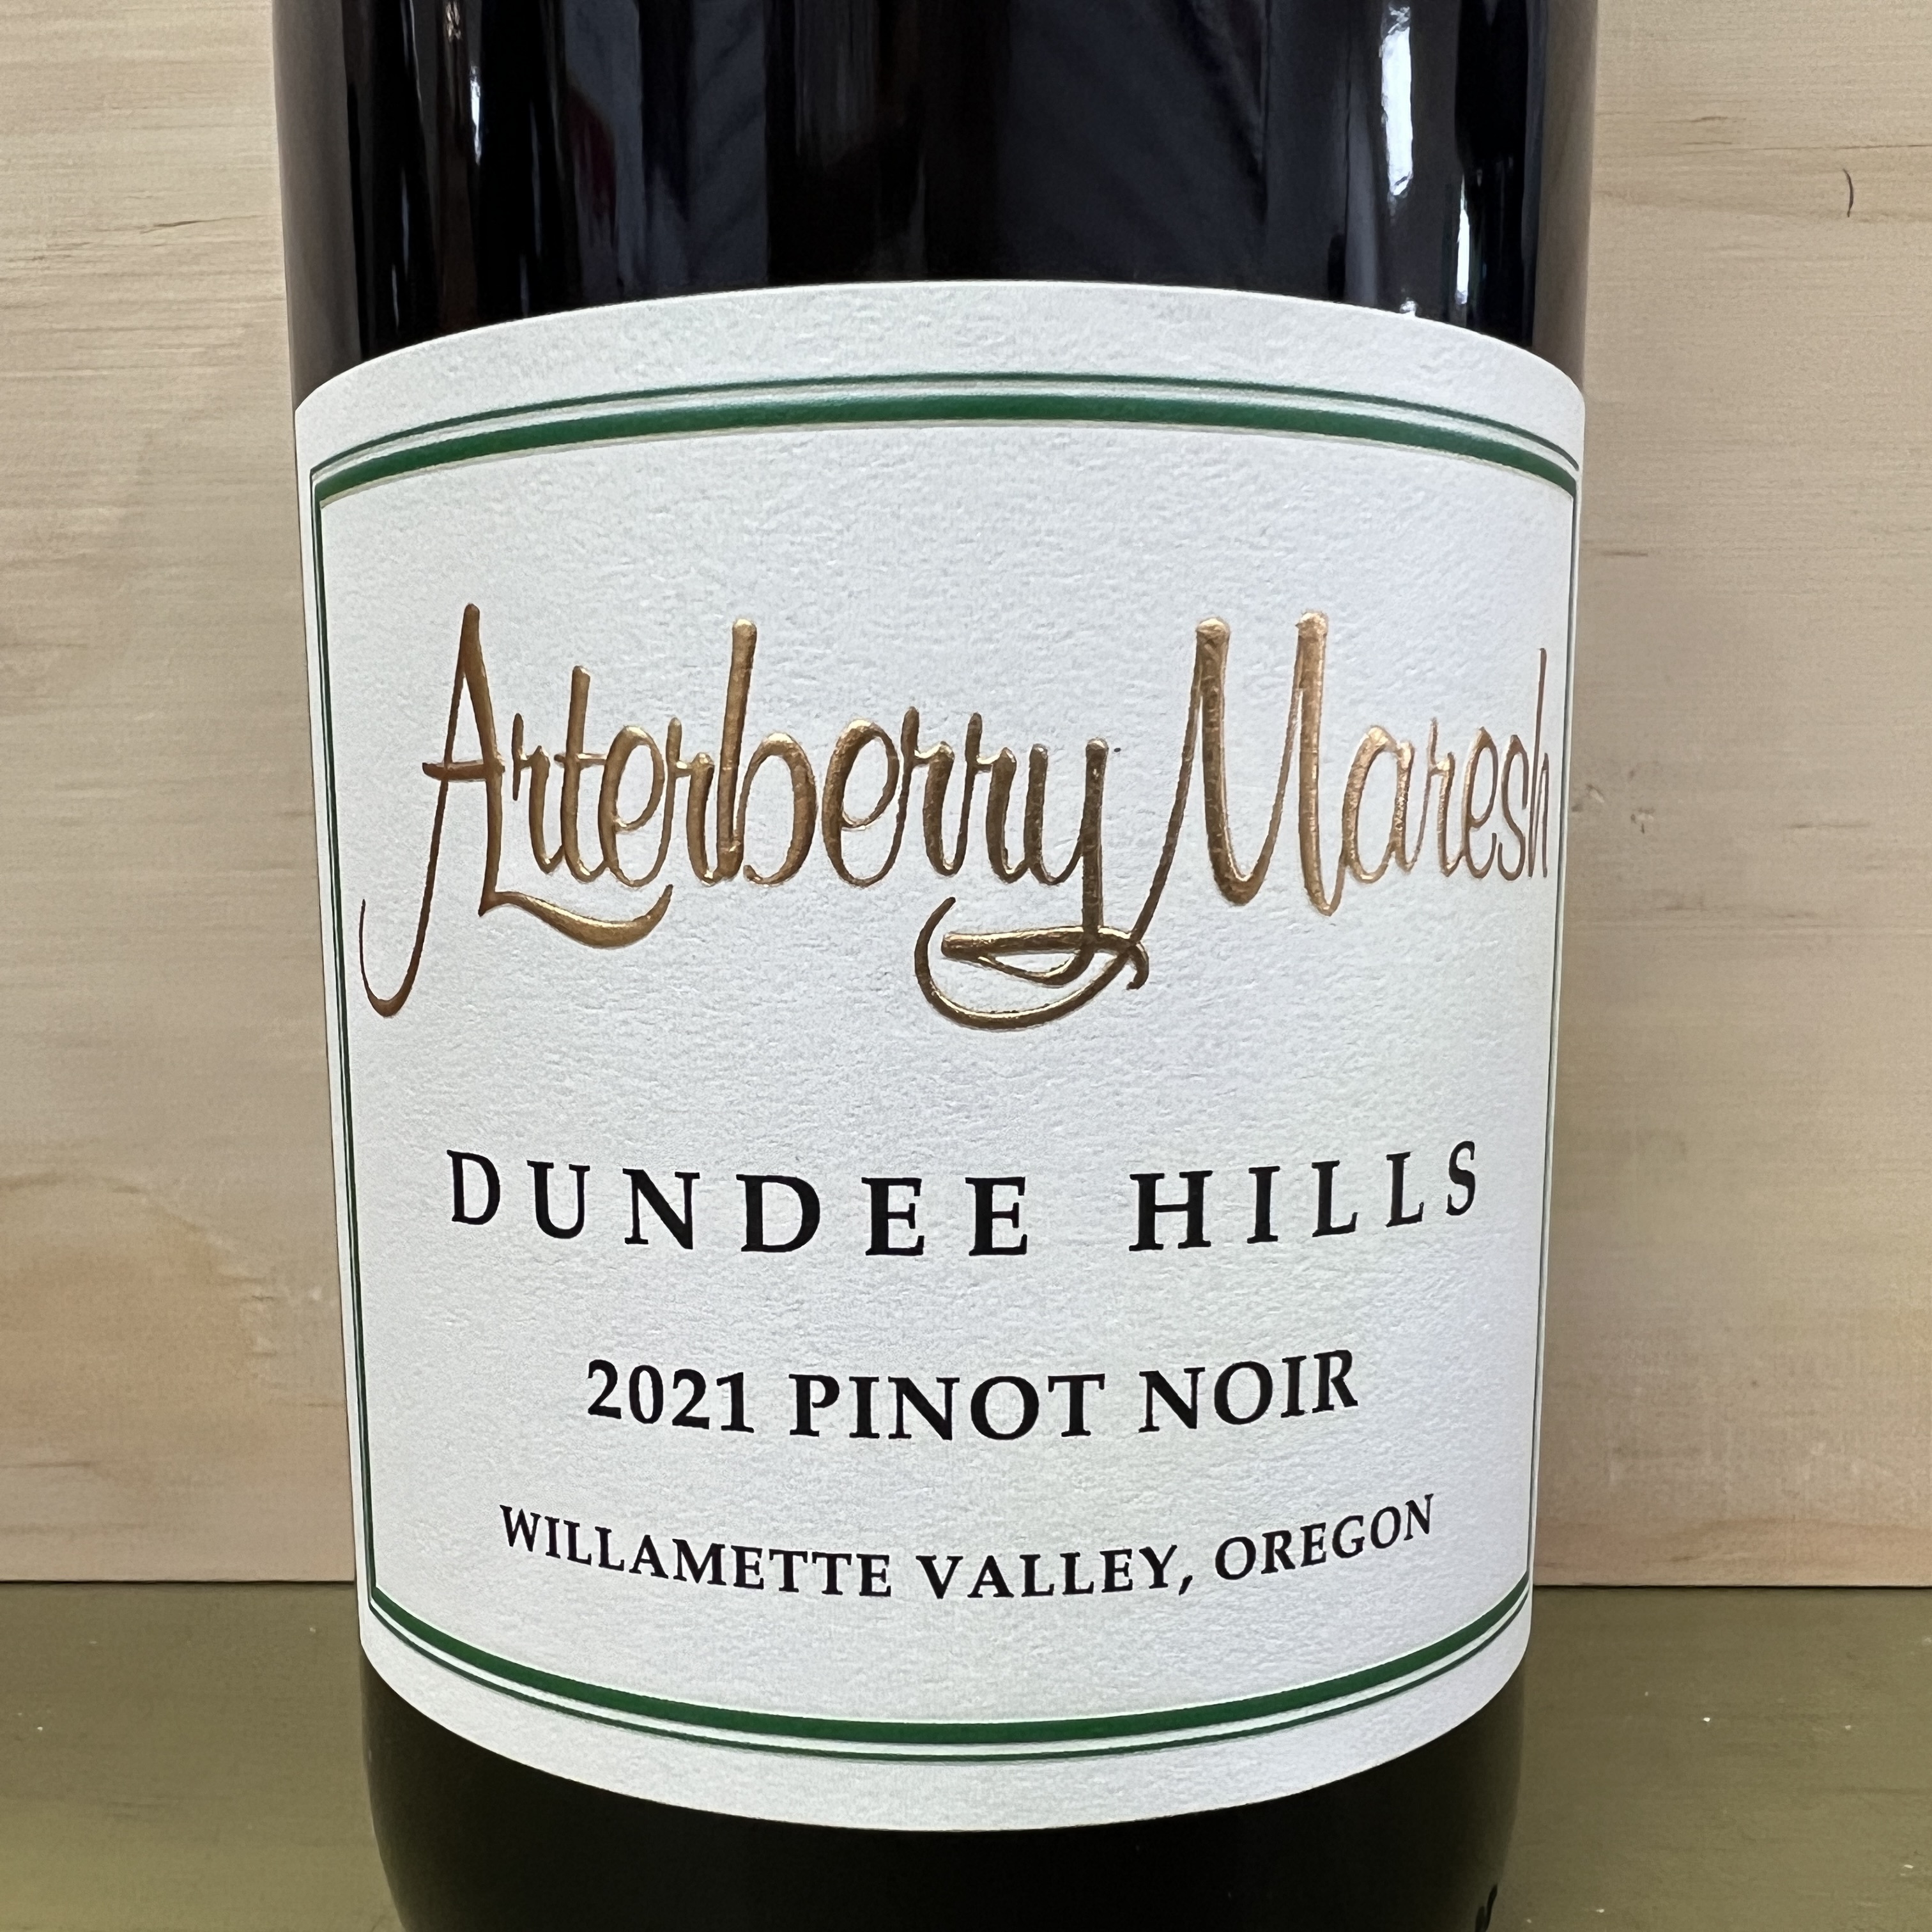 Arterberry Maresh Pinot Noir Dundee Hills 2021